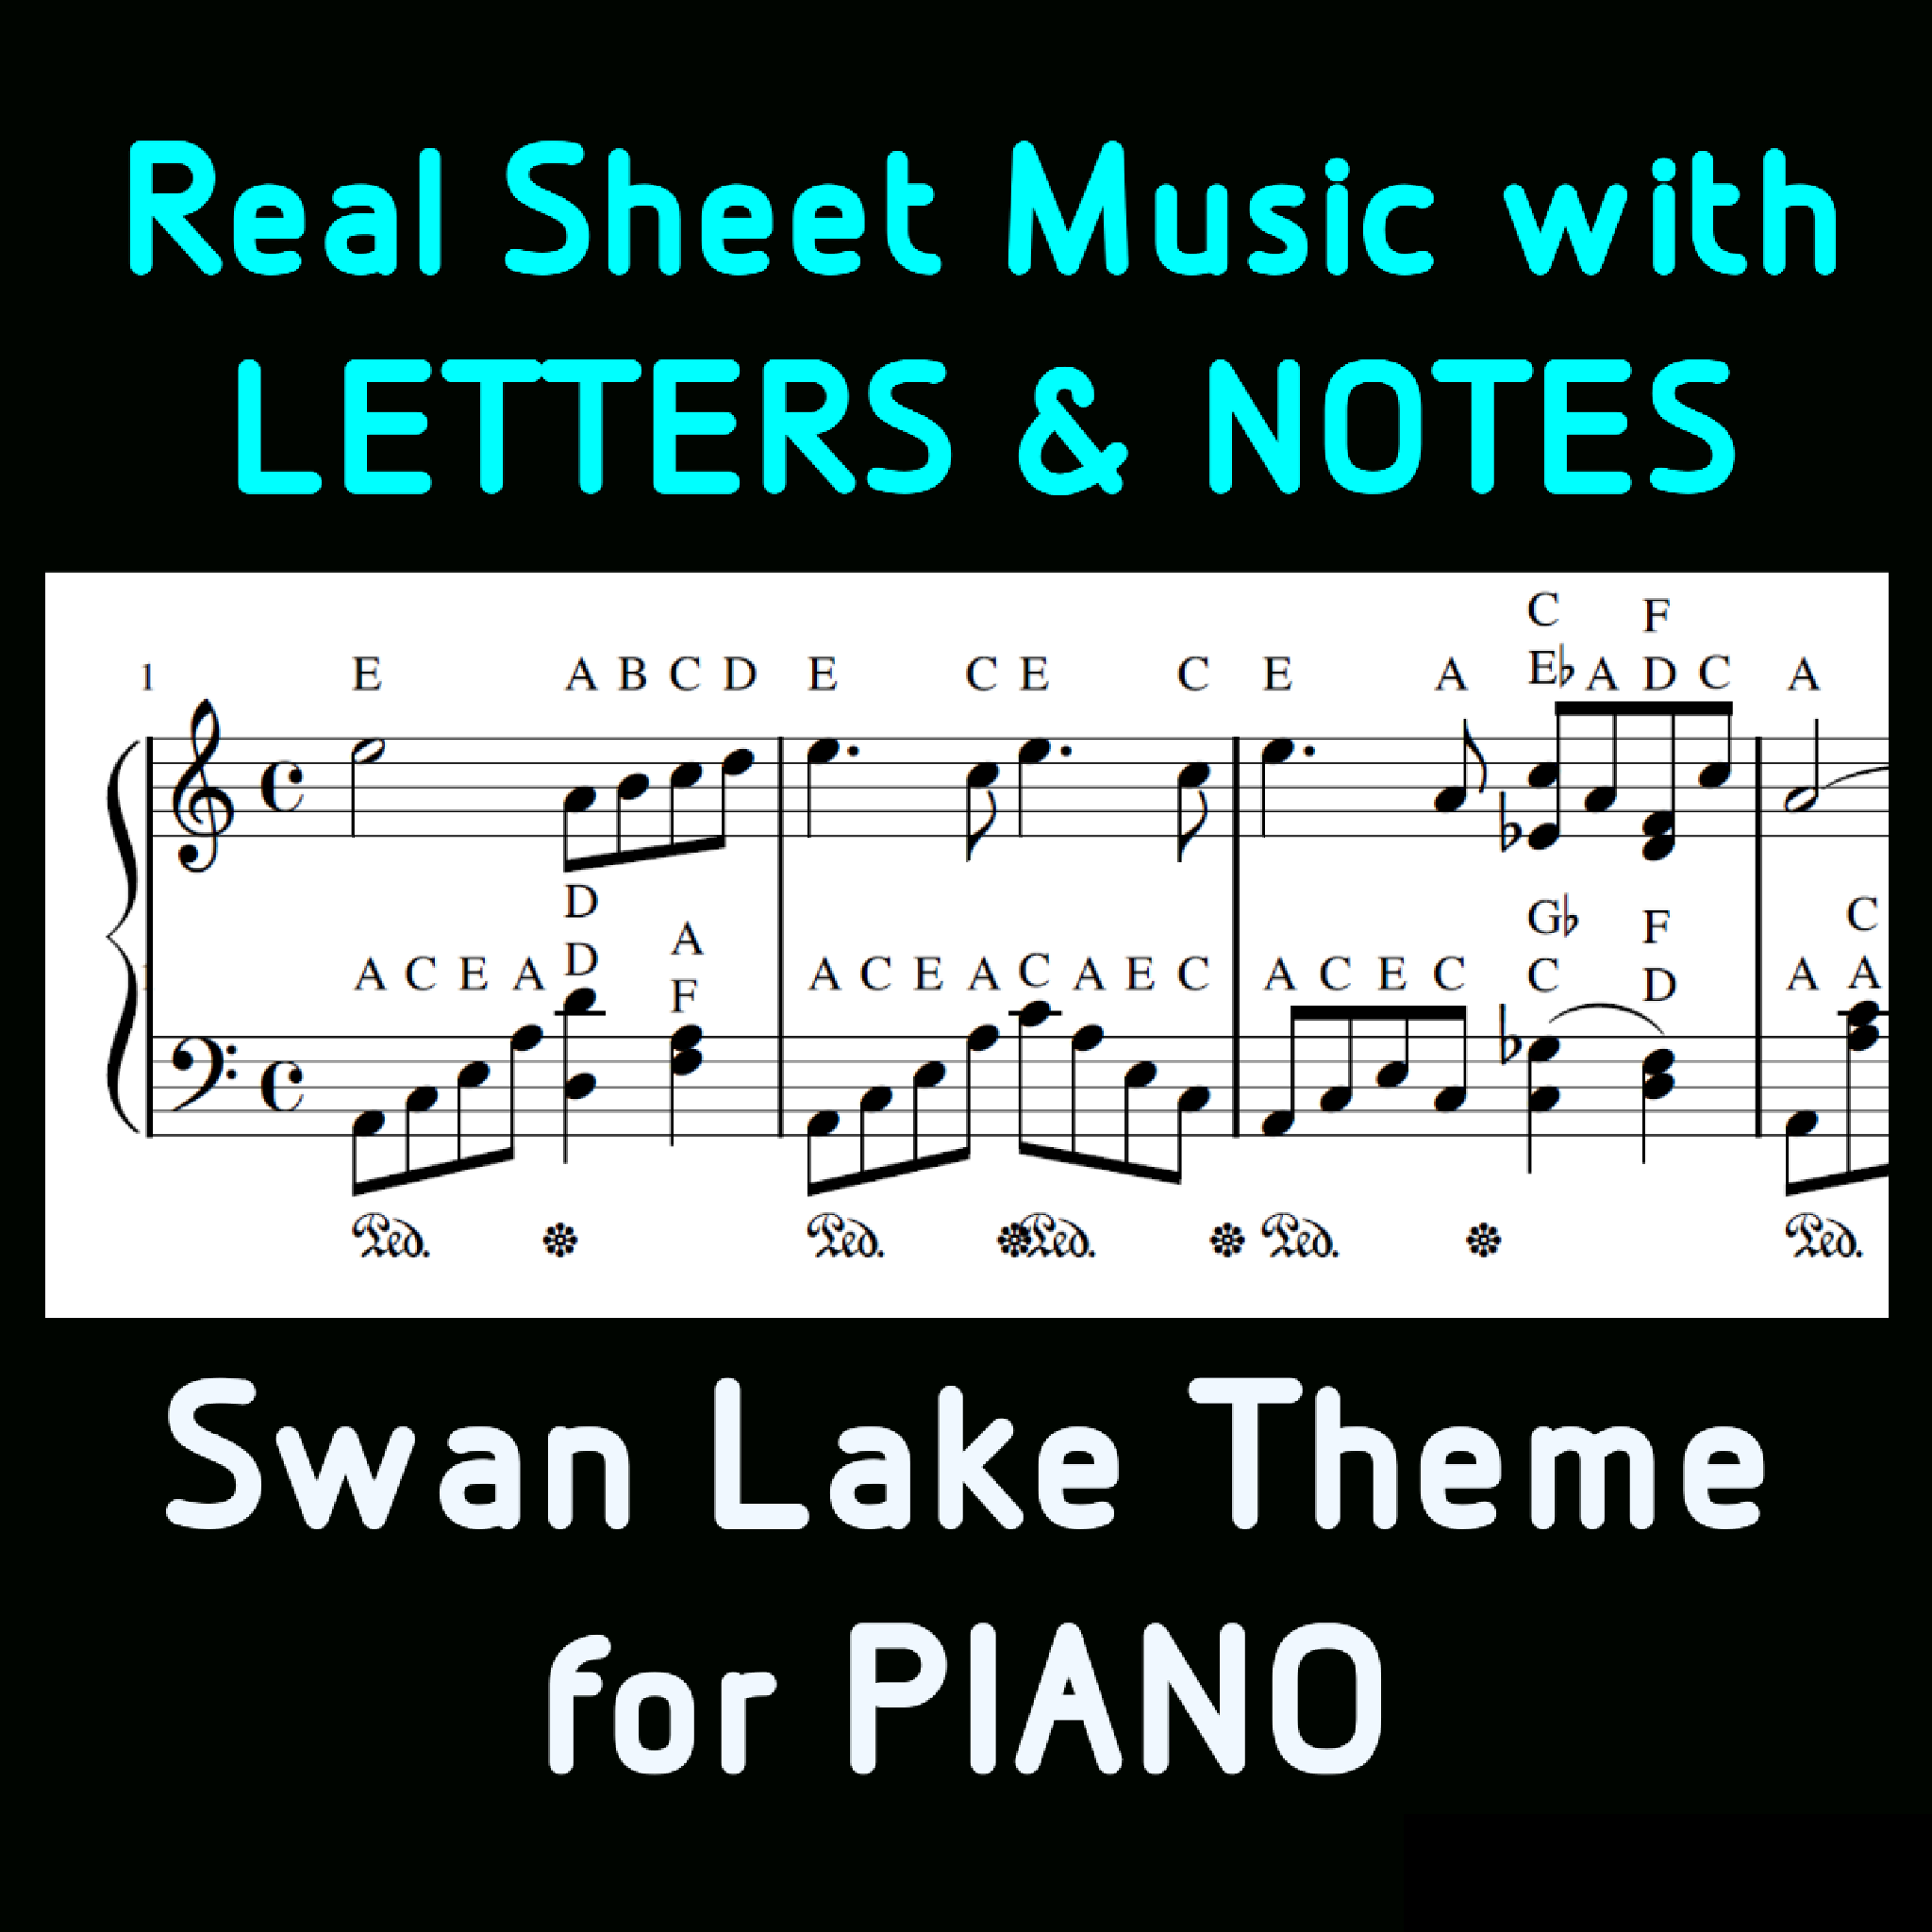 Tema del lago dei cigni, Spartiti per pianoforte con lettere e note  insieme